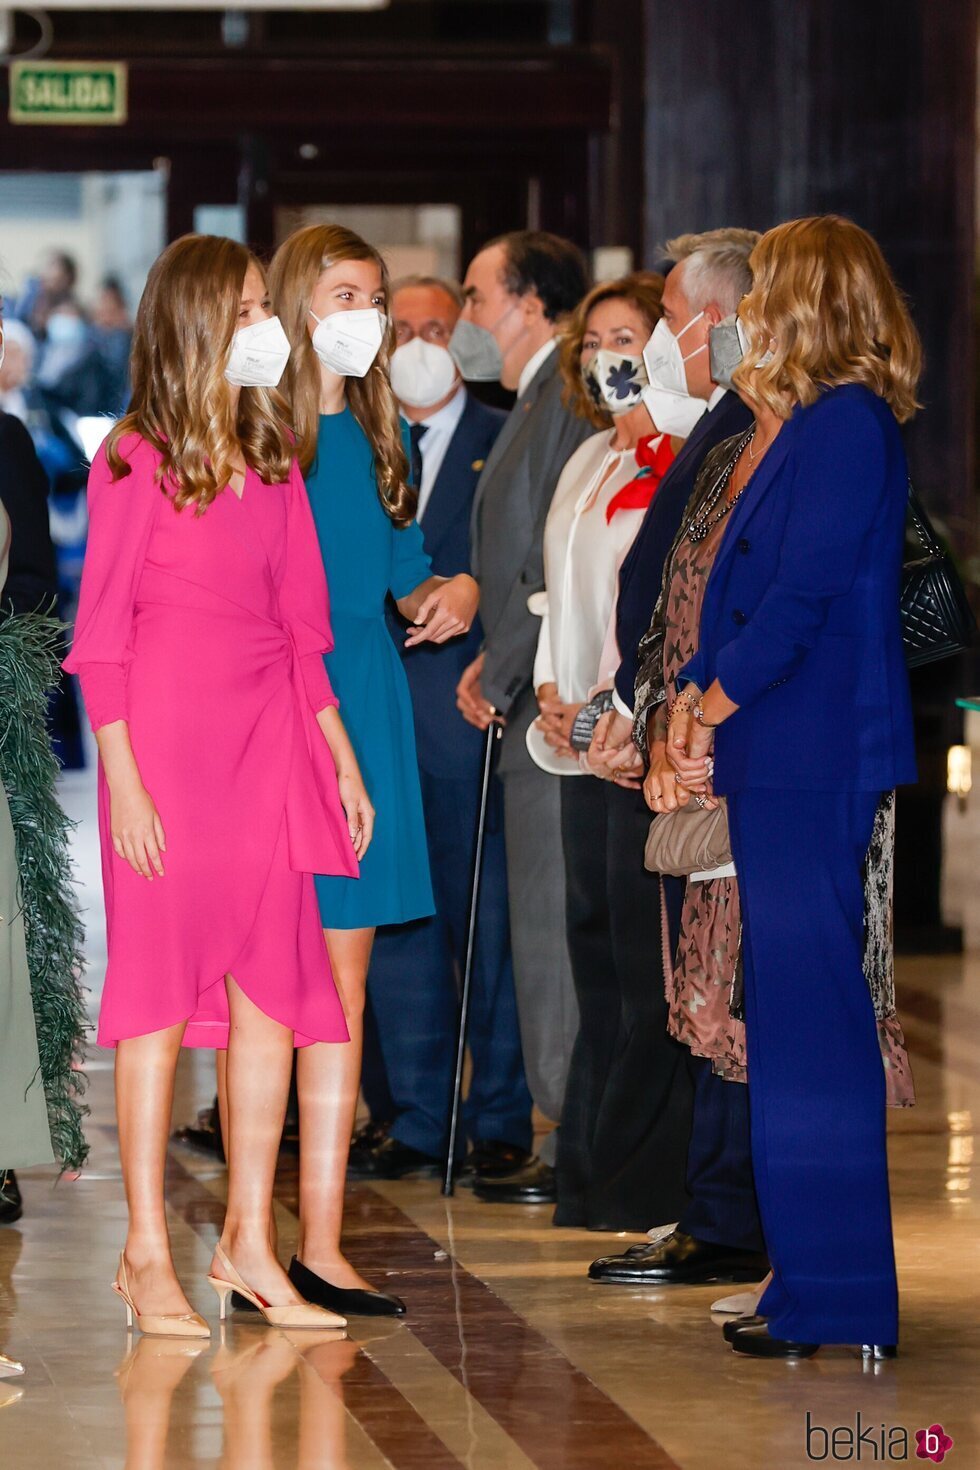 La Princesa Leonor y la Infanta Sofía en el Concierto Premios Princesa de Asturias 2021